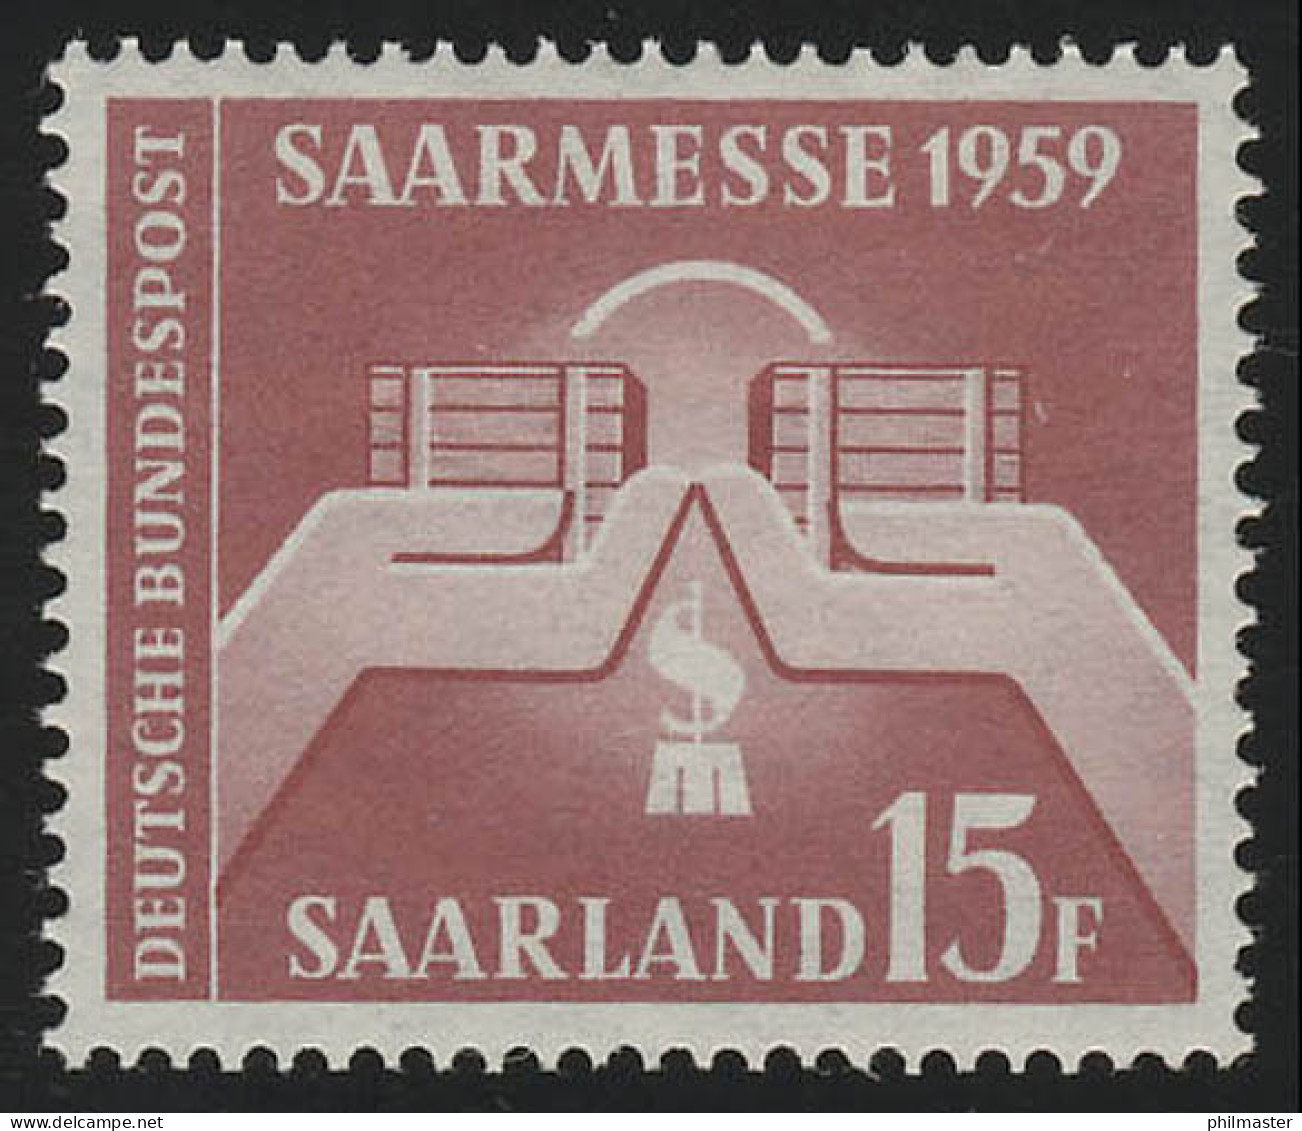 Saarland 447 Saarmesse Saarbrücken 1959, ** - Ungebraucht